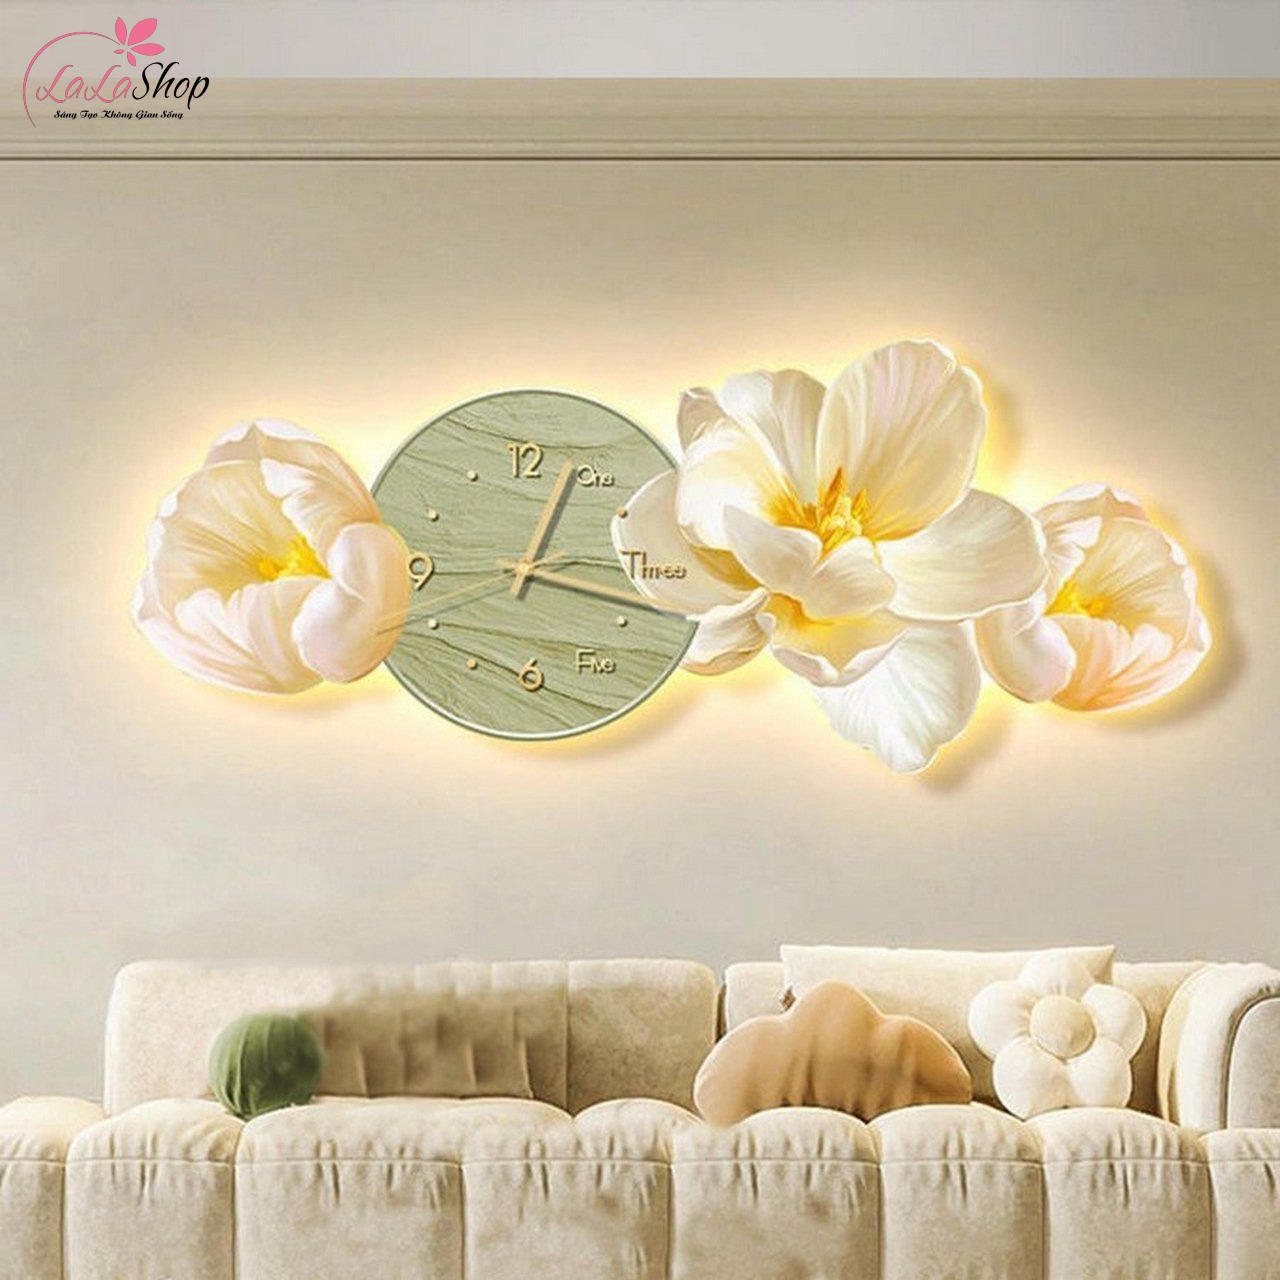 Tranh treo tường - Tranh Đồng Hồ Đèn LED Tráng Gương Pha Lê UV Hoa Nghệ Thuật làm cho phòng ngủ trở nên đặc biệt hơn